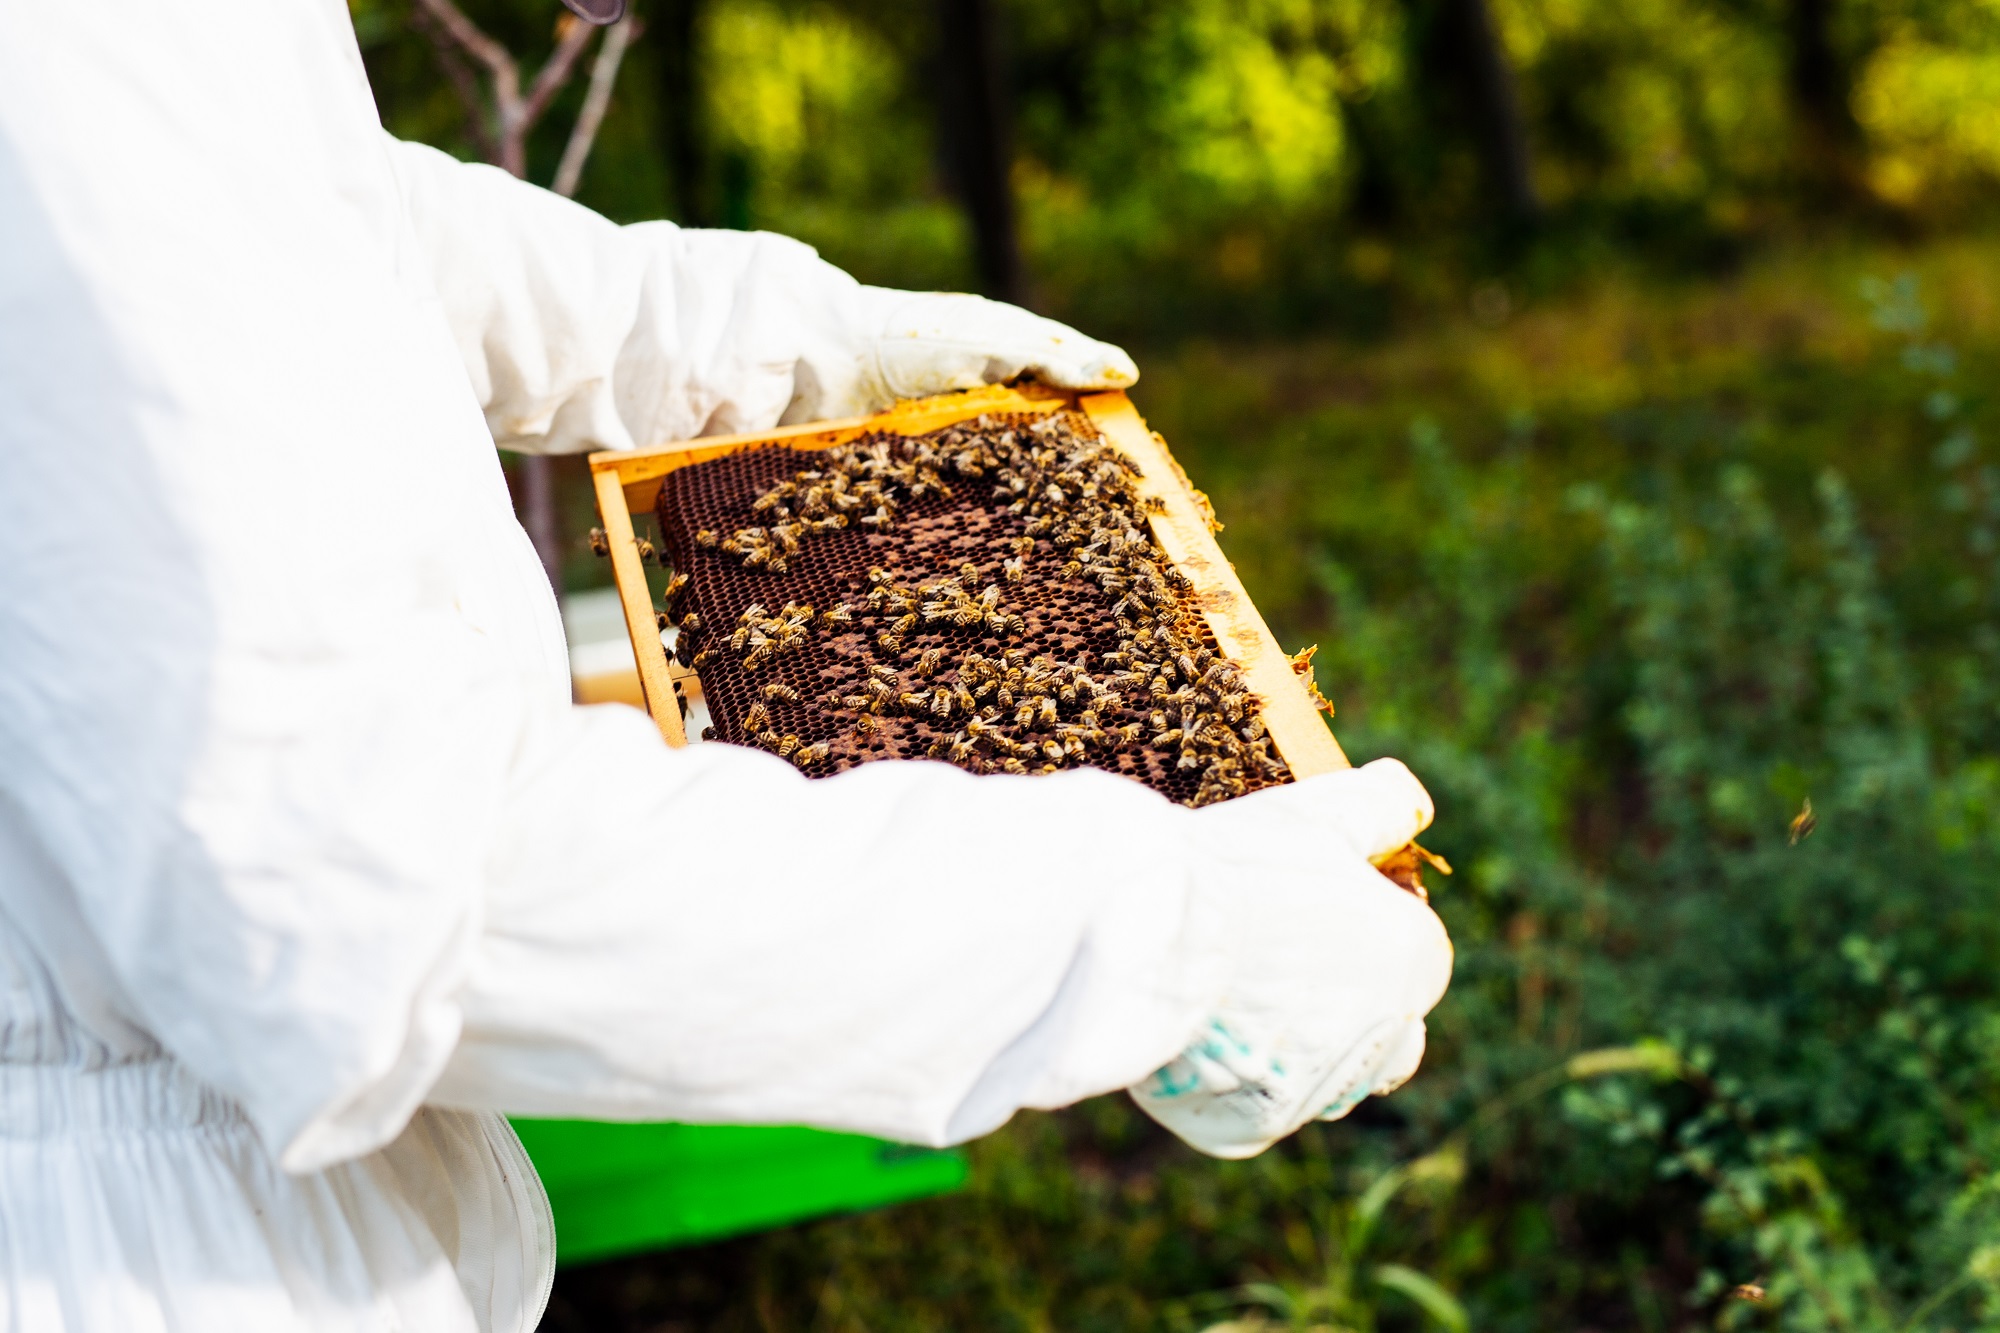 يواجه العاملون في قطاع تربية النحل في الأردن، مشاكل عدة أهمها التسويق وقلة الإقبال على شراء العسل في ظل أزمة فيروس كورونا. (shutterstock)